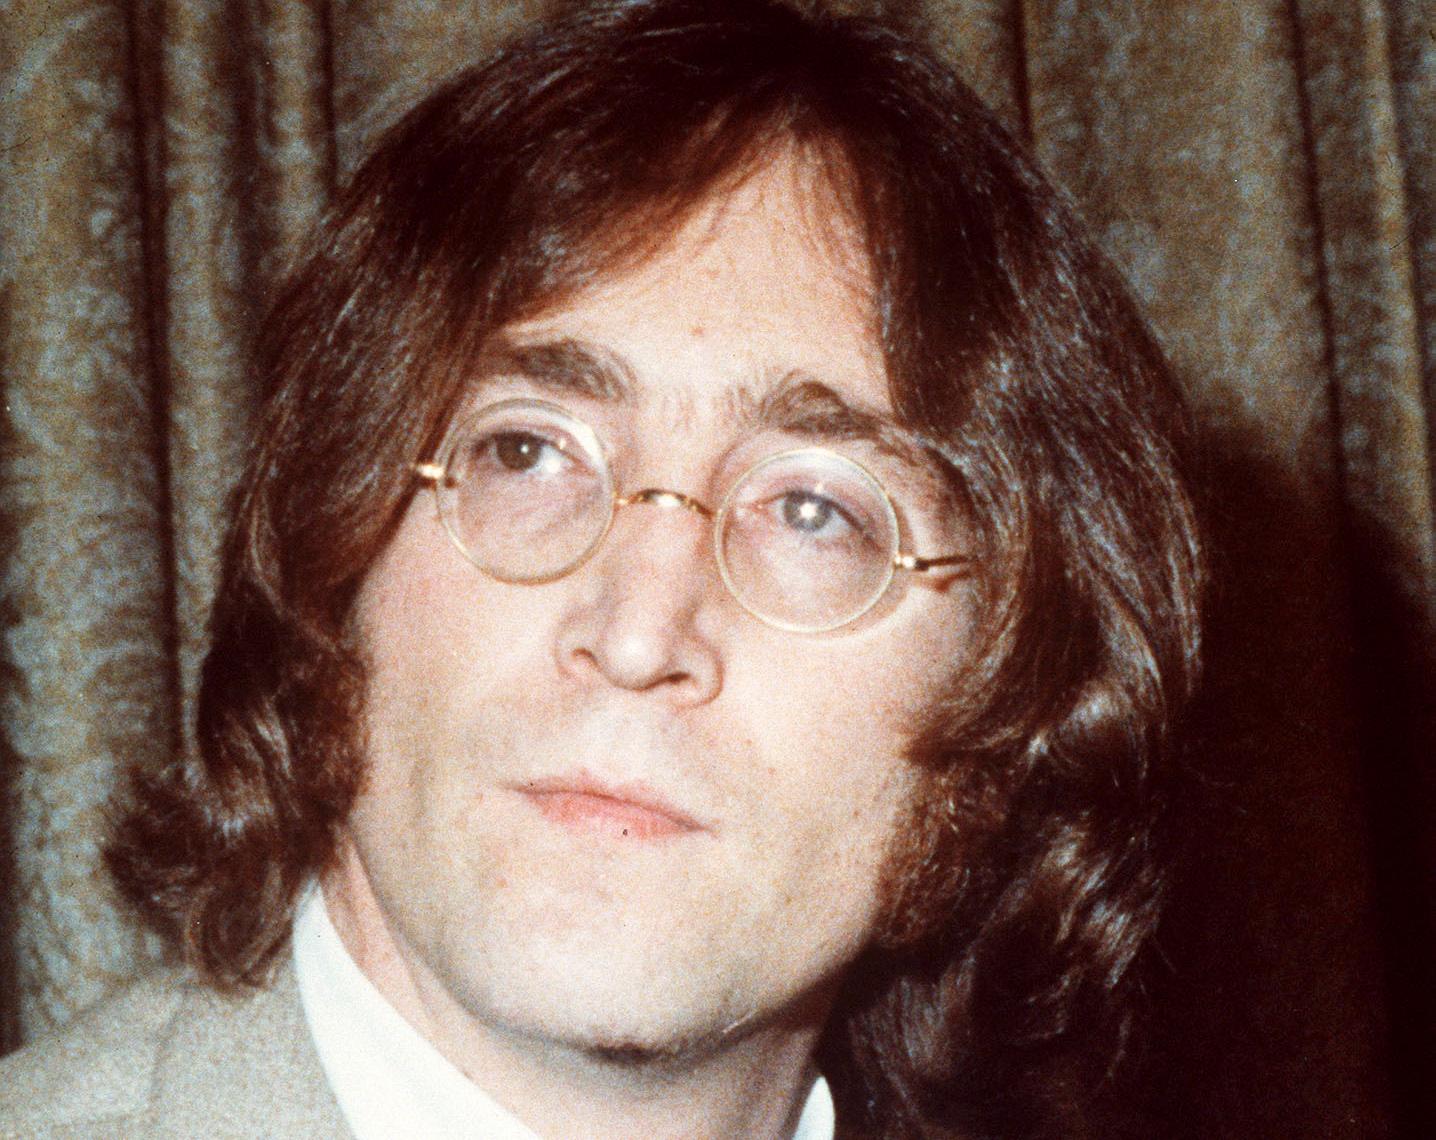 John Lennon sköts till döds utanför sitt hem i december 1980. Arkivbild.